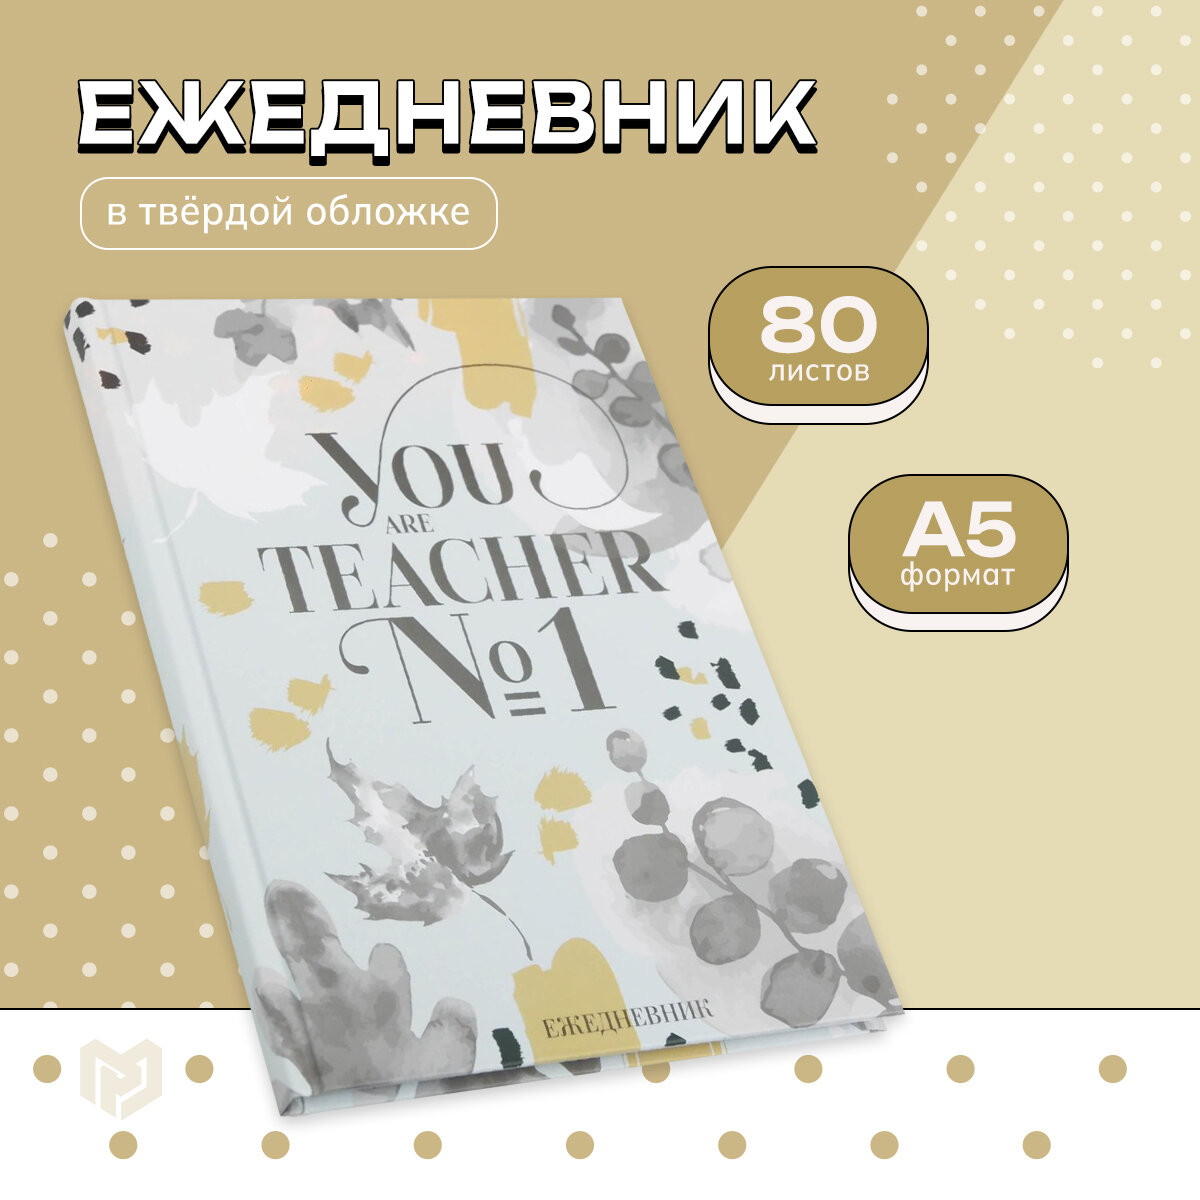 Ежедневник "You TEACHER №1", формат А5, 80 листов